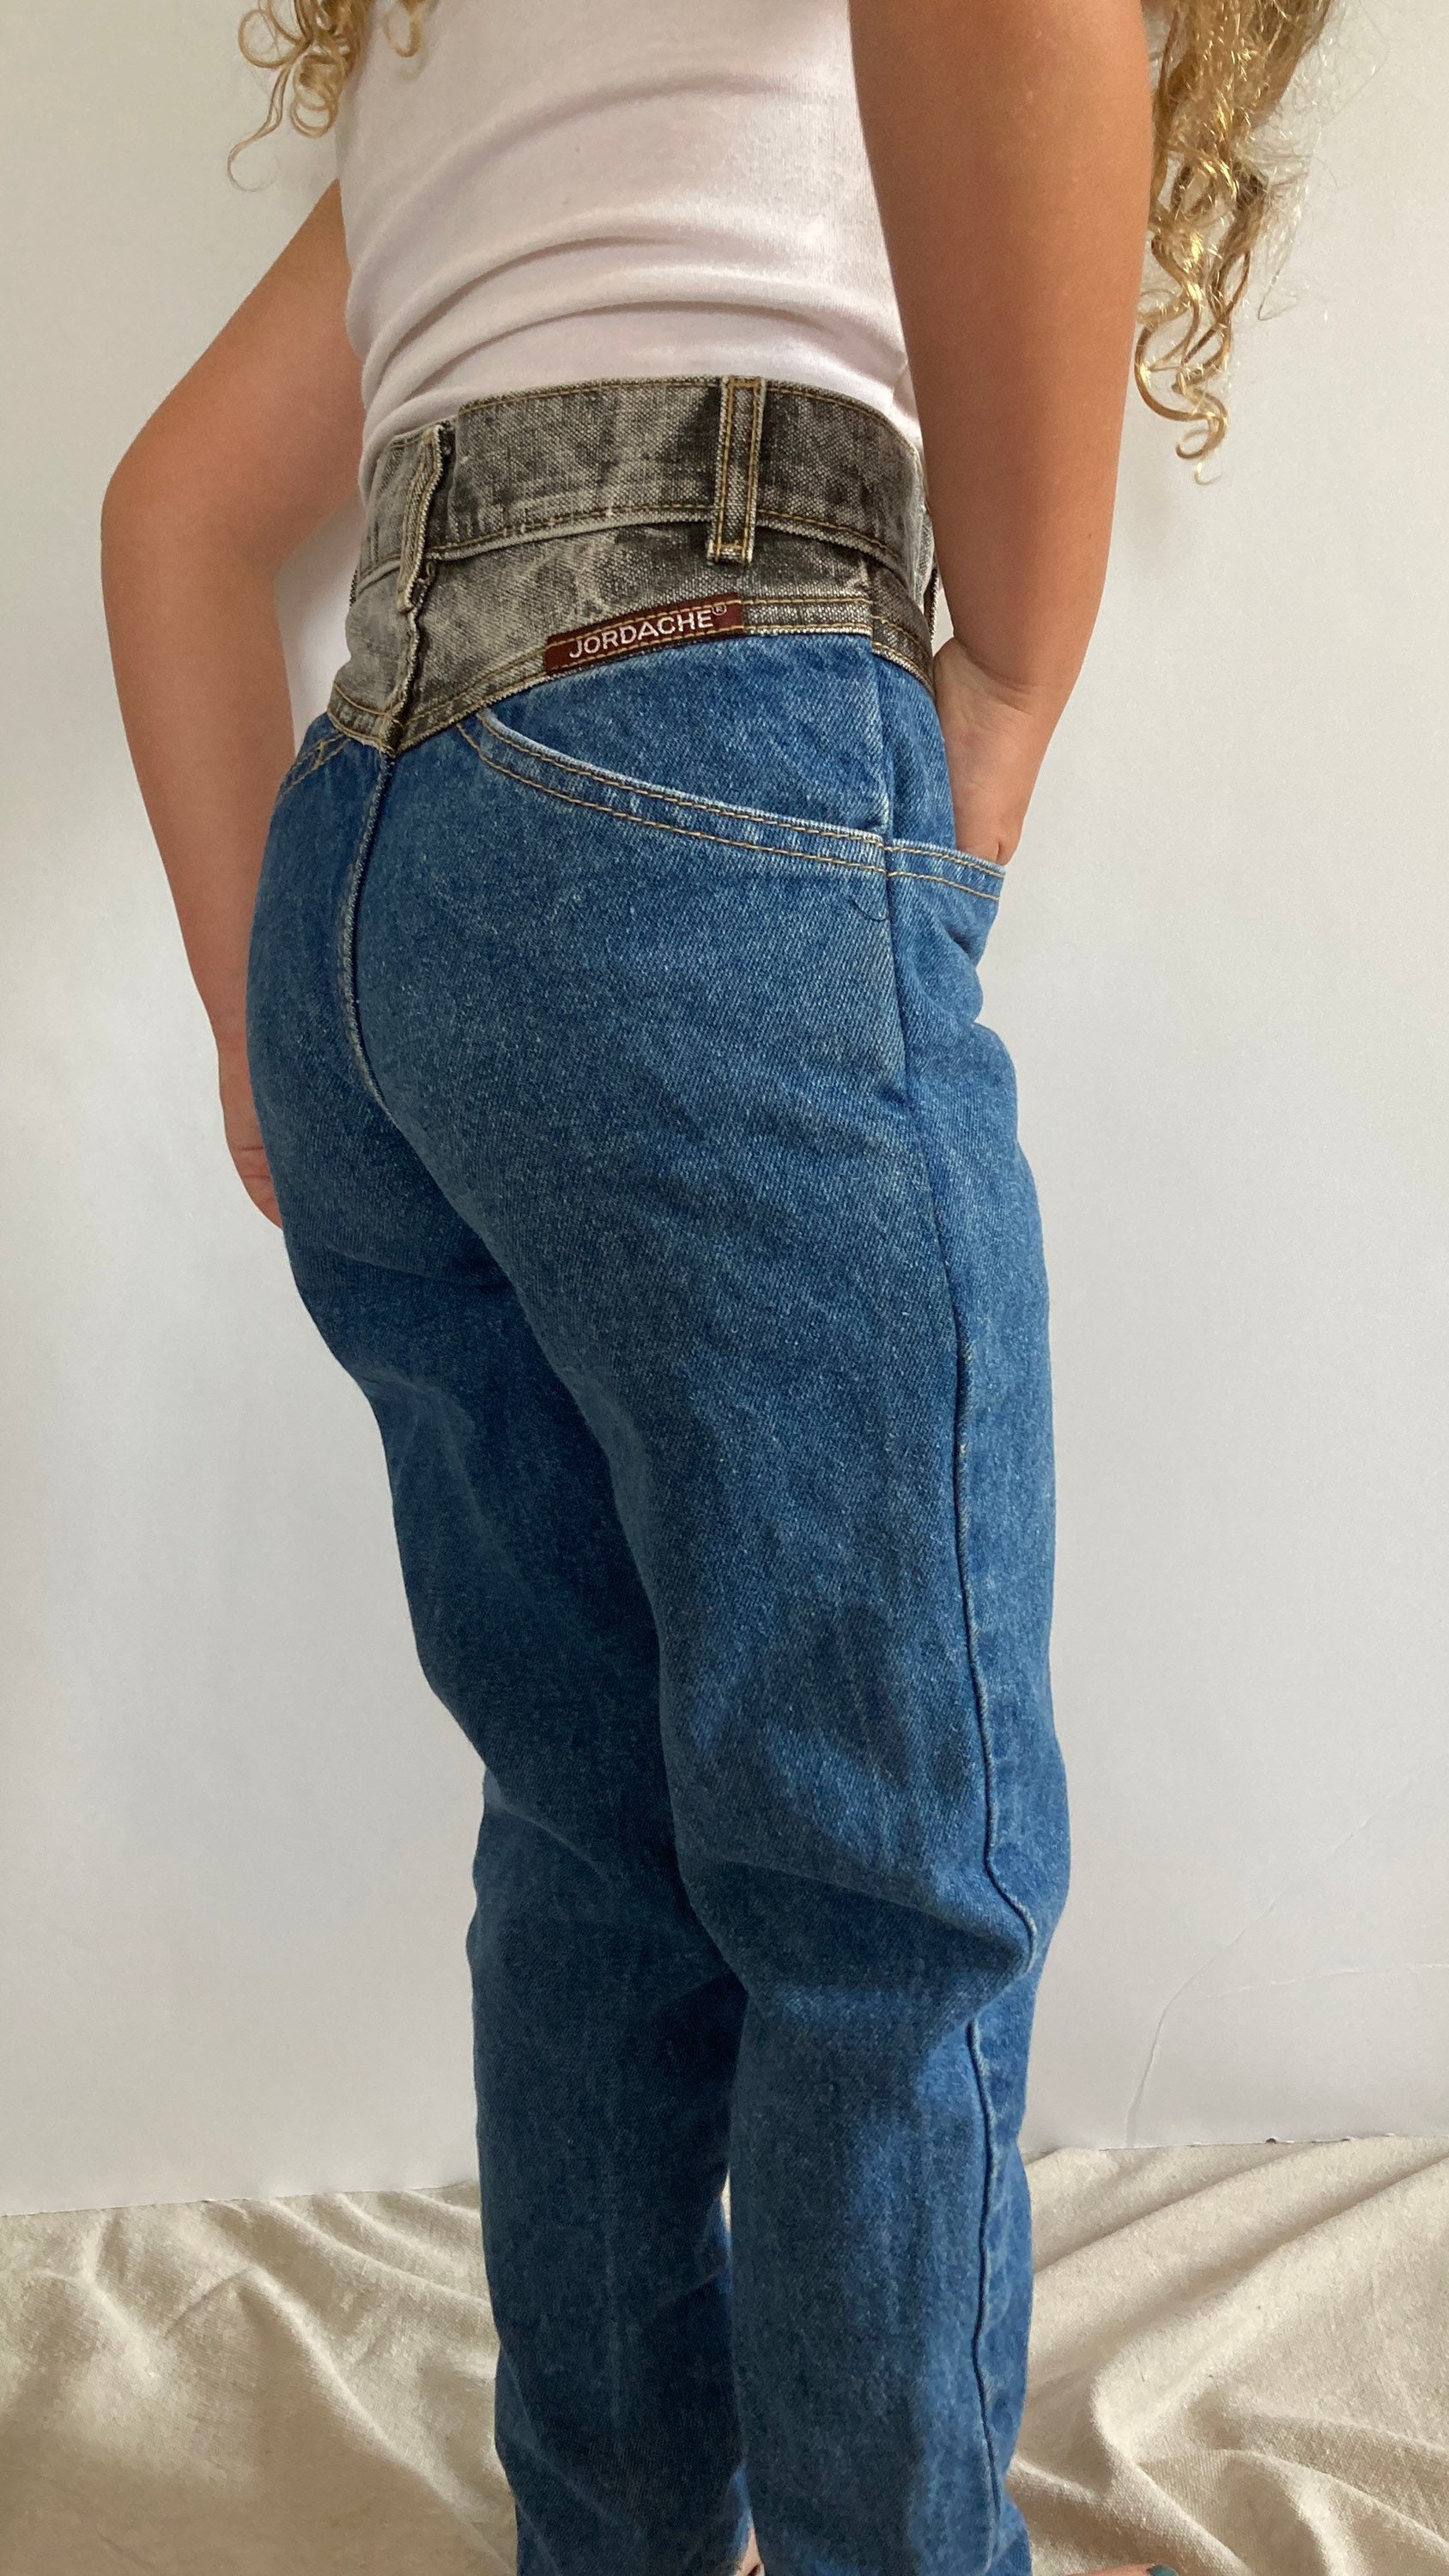 1980s, 1990s, Vintage Jordache Jeans, Two Tone Denim, High Rise